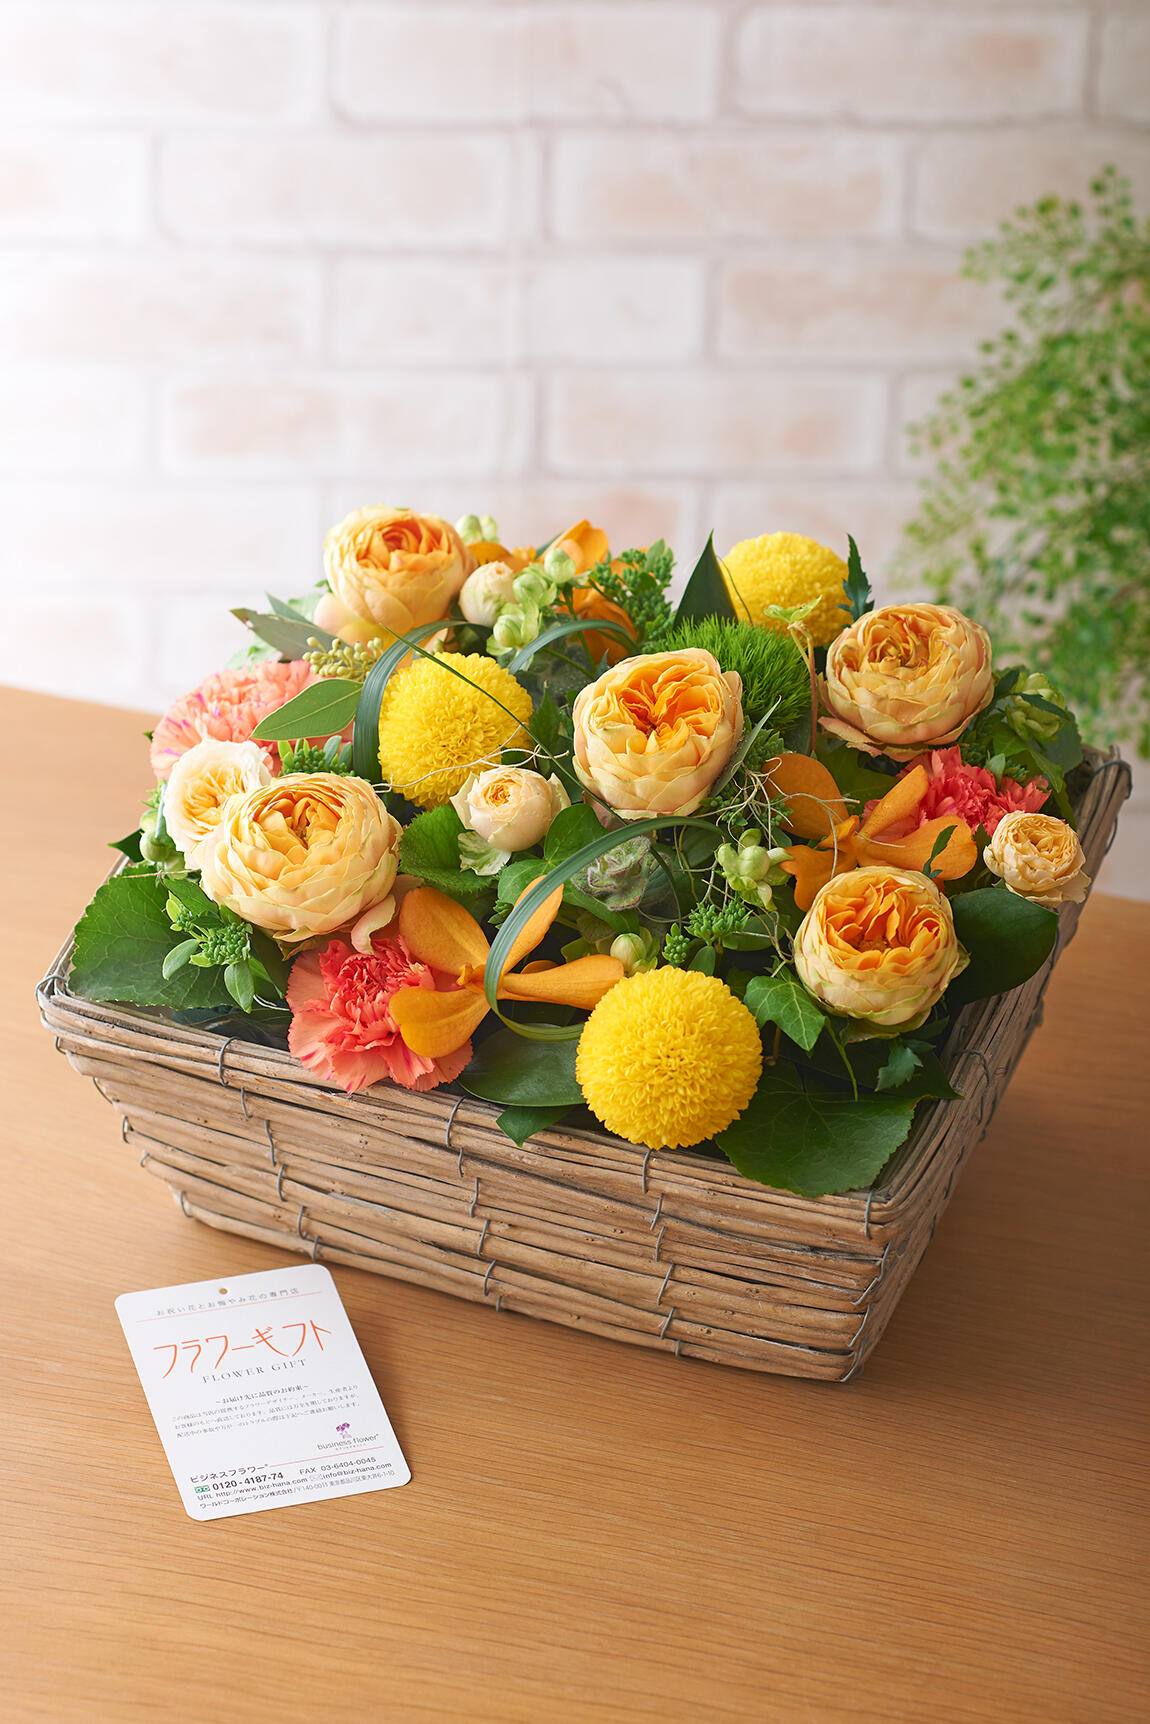 アレンジメントフラワー アレンジメントフラワー Square Basket 黄色系 祝い花と供花の販売 ネットの花屋 ビジネスフラワー